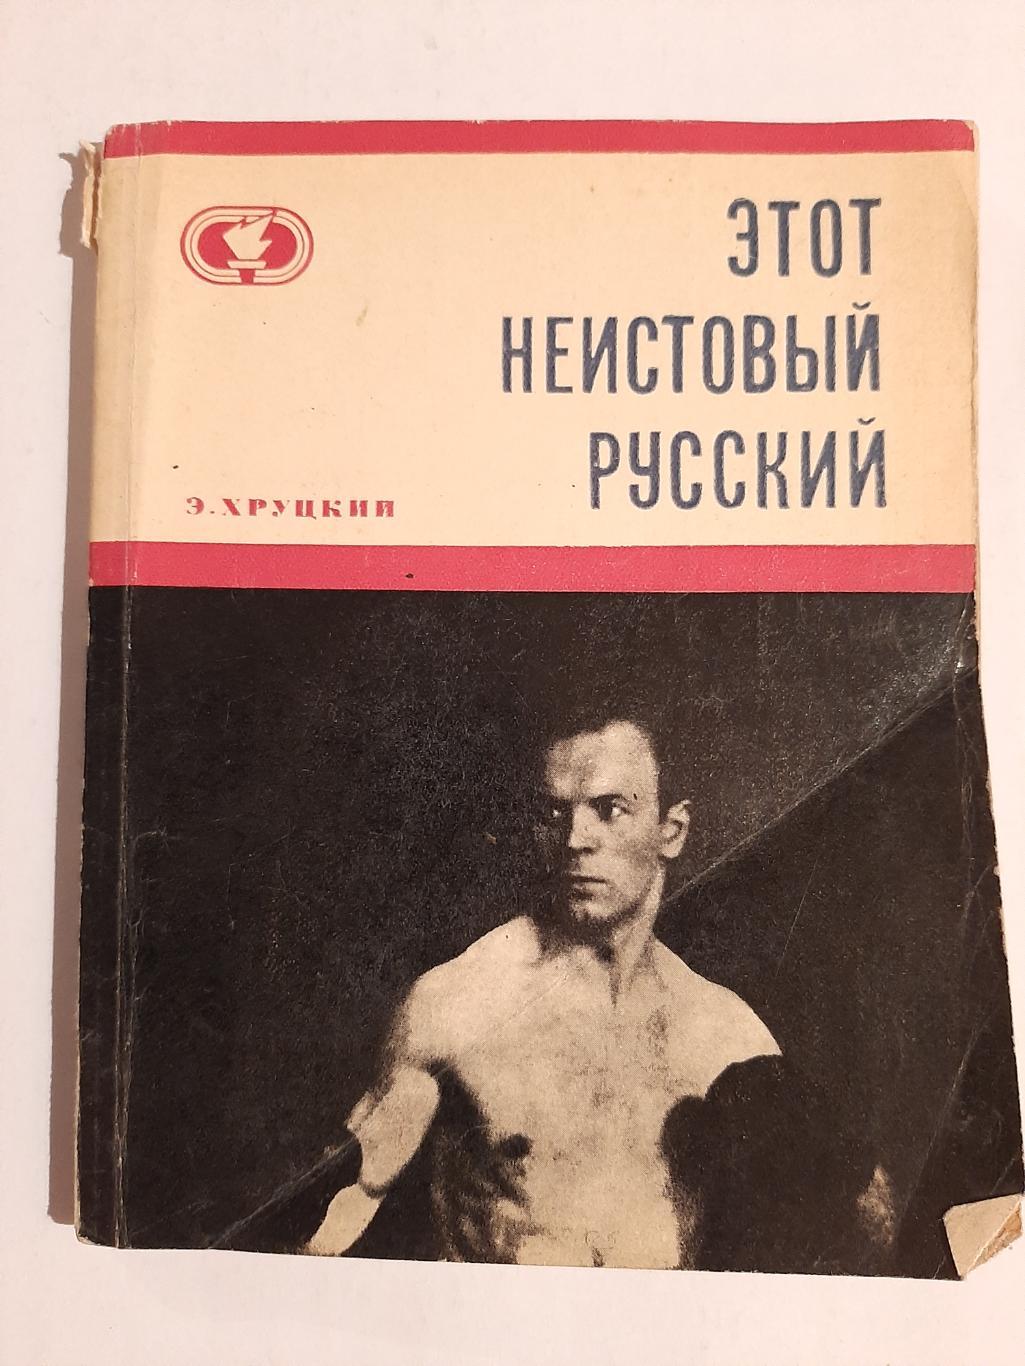 Аркадий Харлампиев. Этот неистовый русский 1970 автор Э. Хруцкий